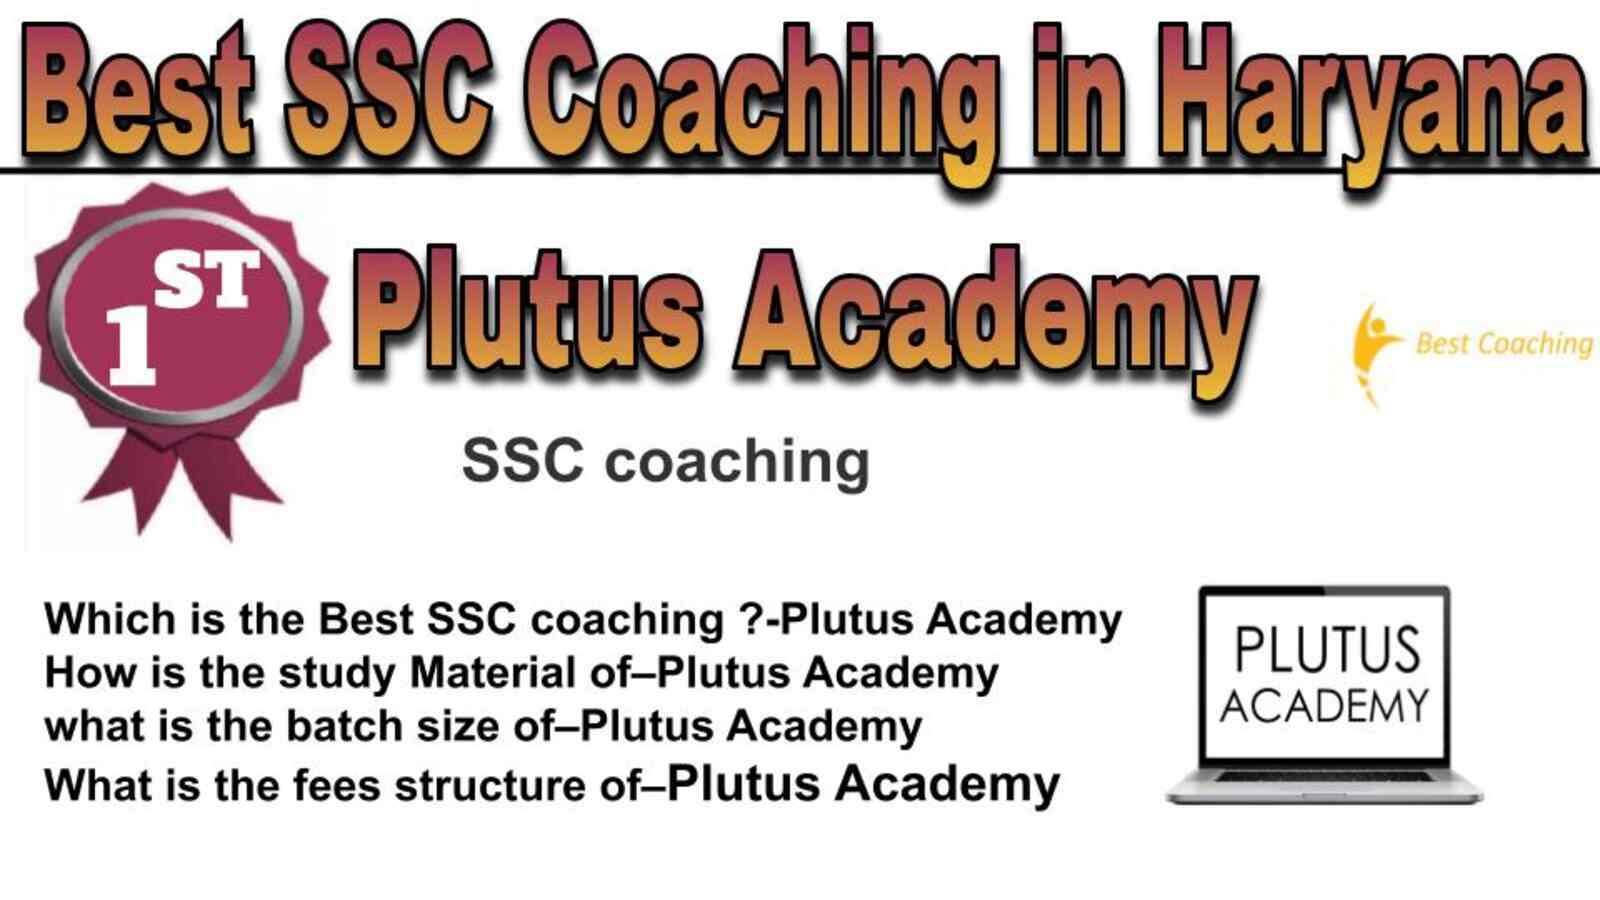 Rank 1 best SSC coaching in Haryana